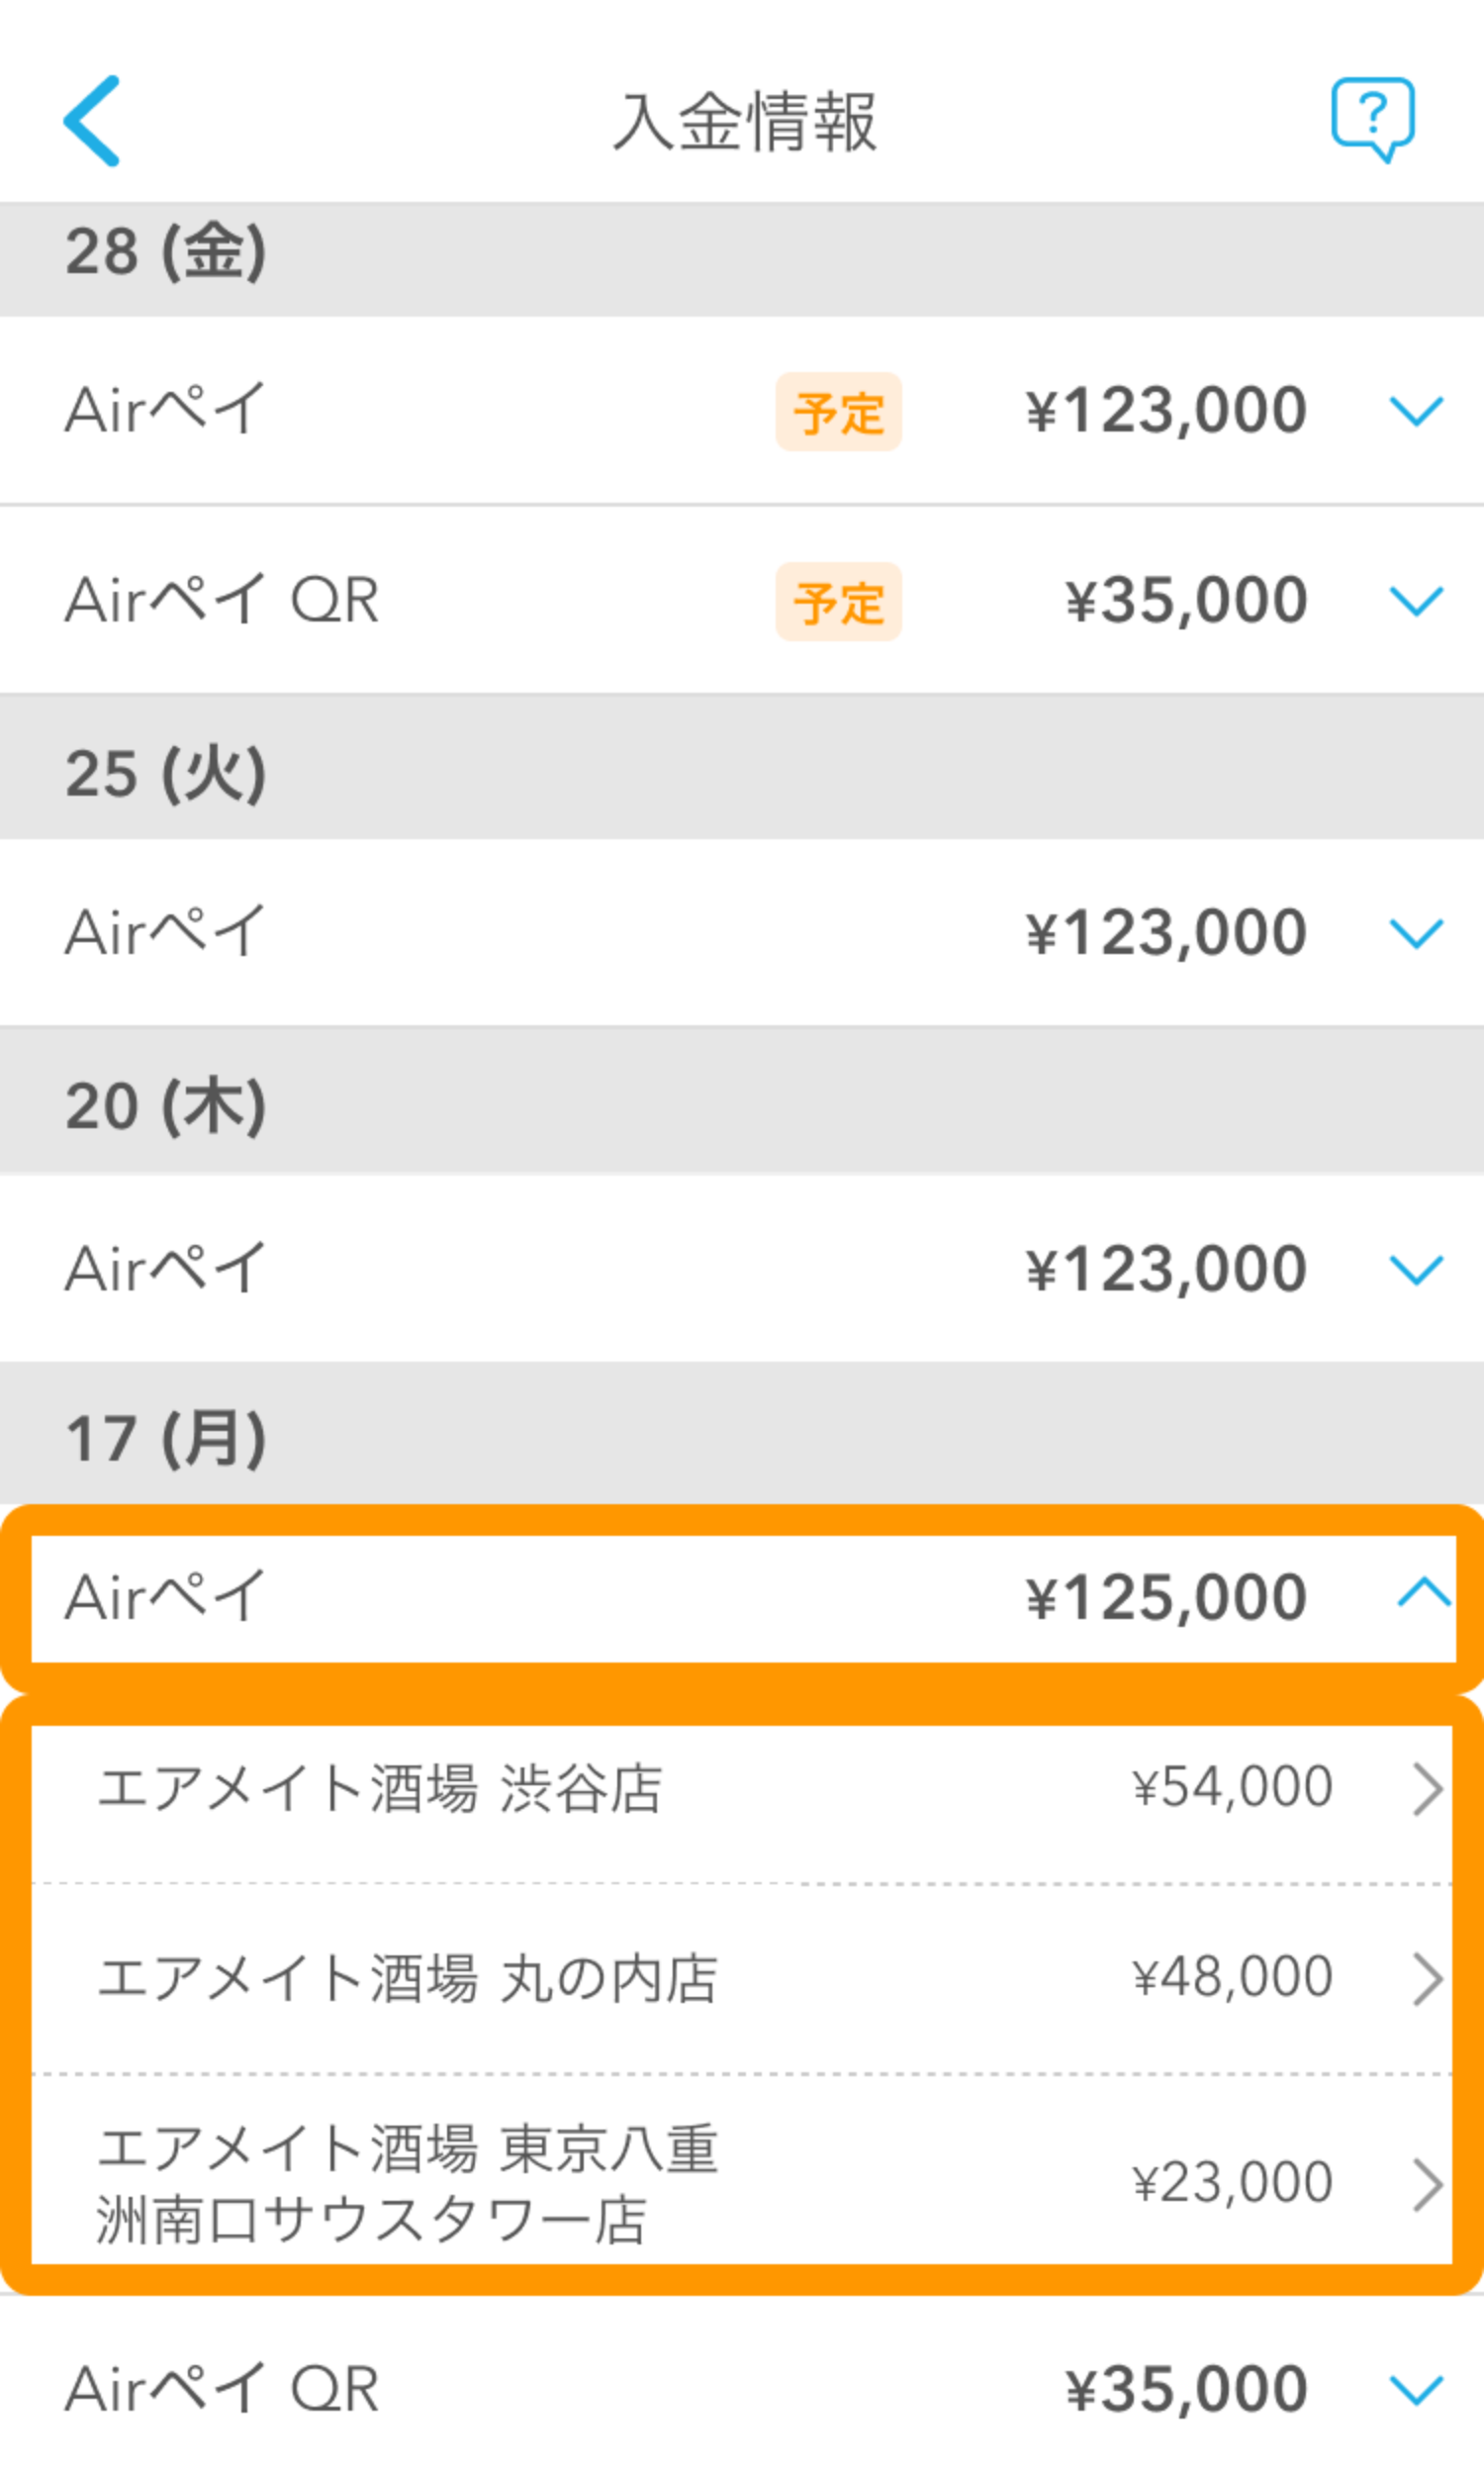 02 Airメイト アプリ 入金情報